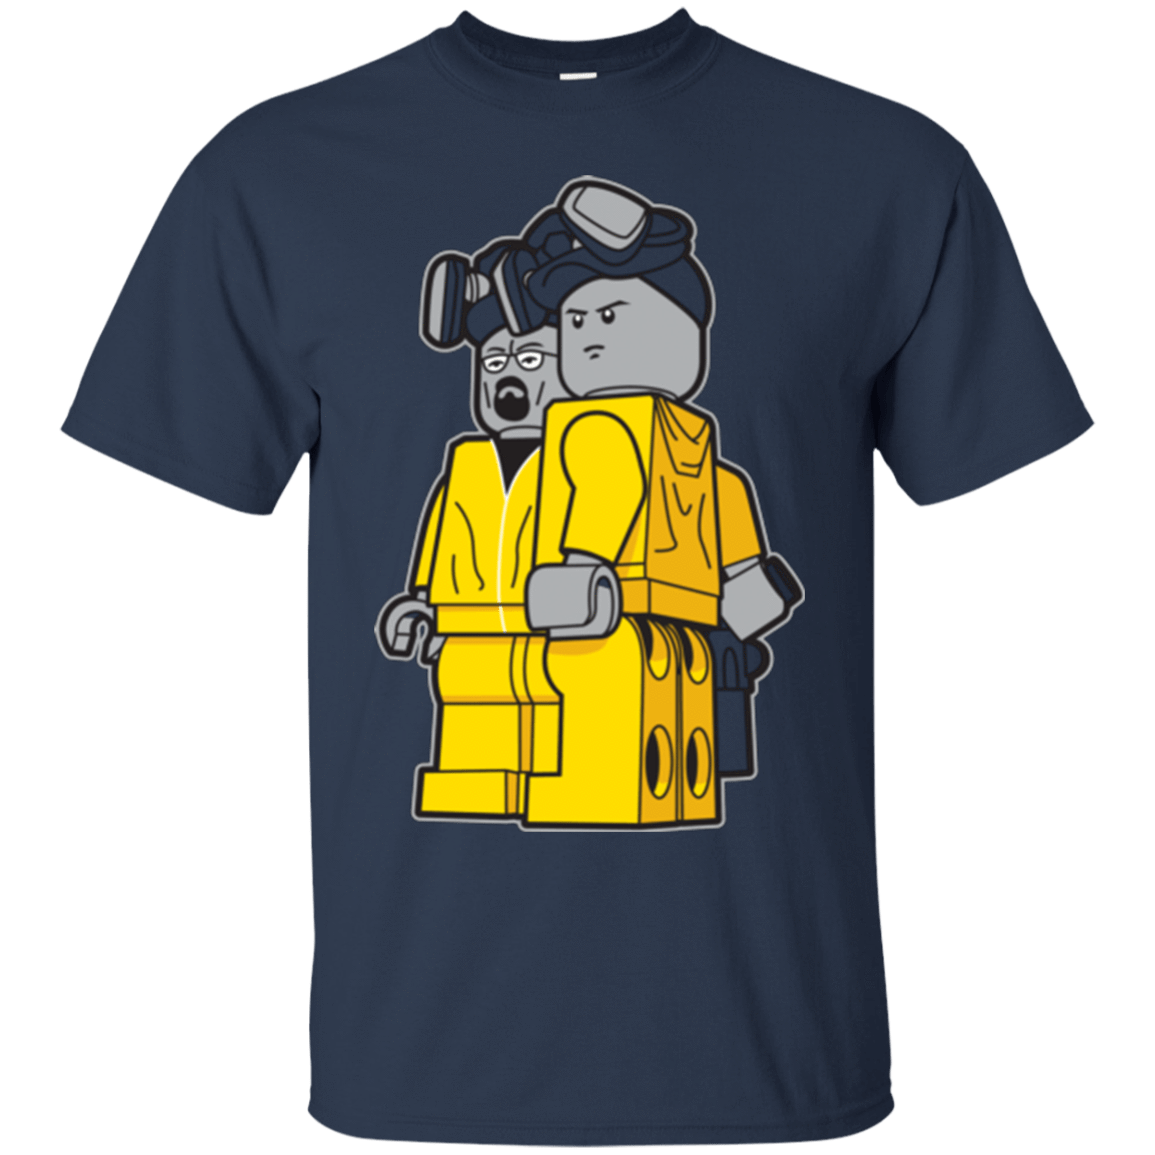 T-Shirts Navy / Small Bricking Bad T-Shirt